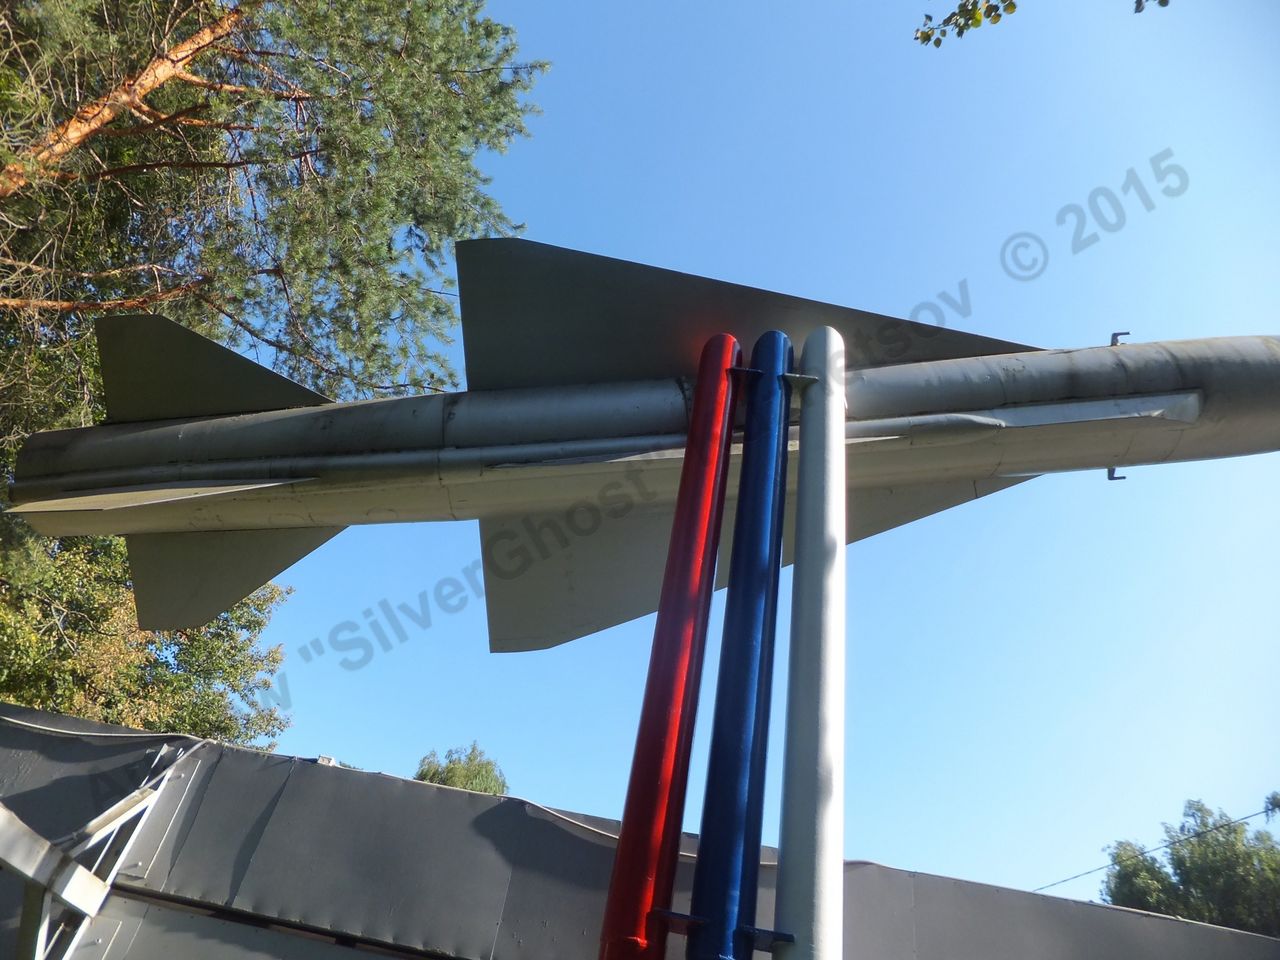 Kh-22 missile_0051.jpg